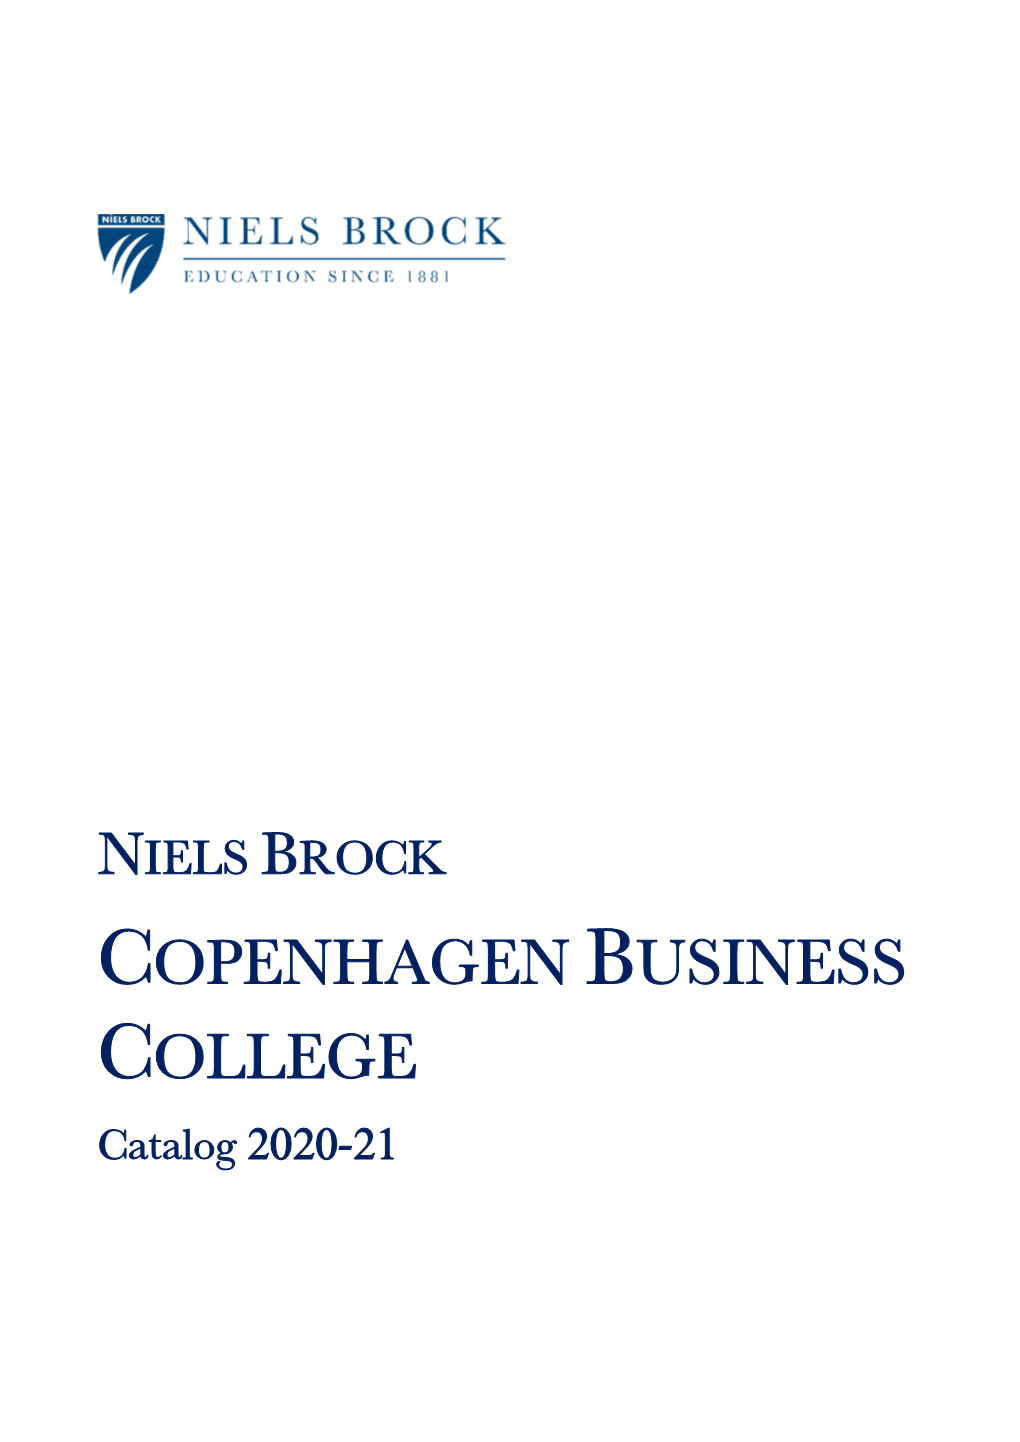 A. Niels Brock Copenhagen Business College